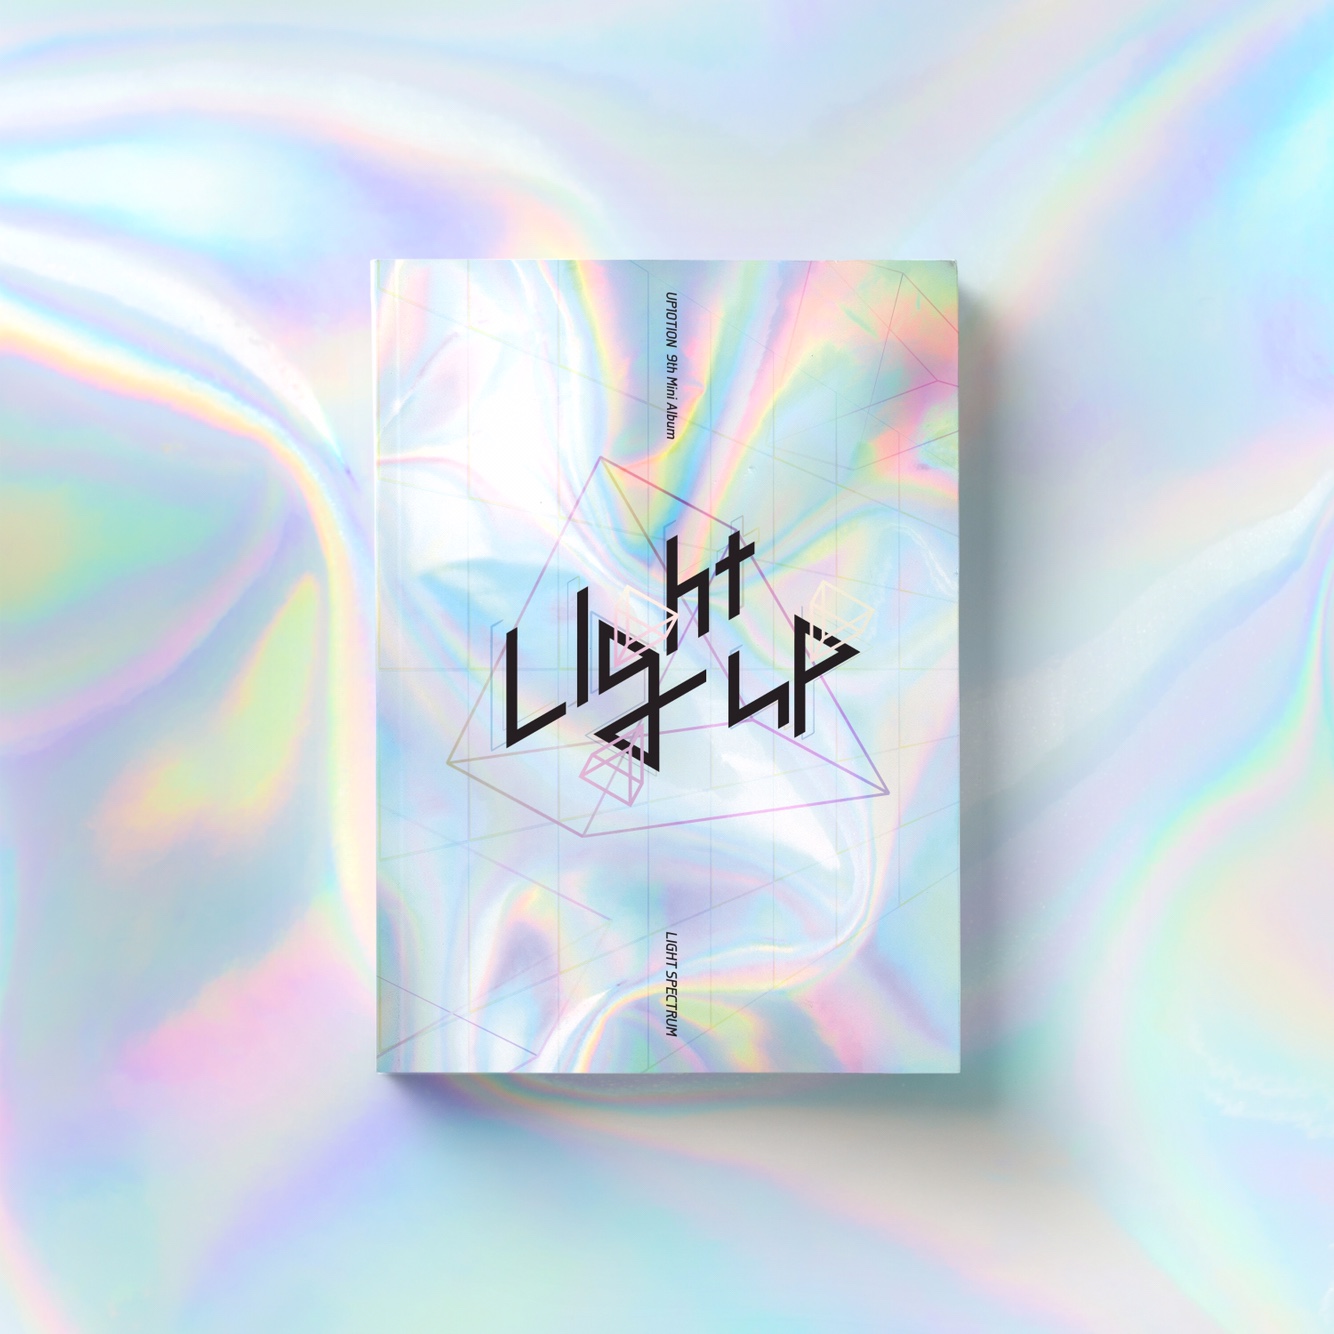 업텐션 - 미니앨범 9집 [Light UP] (LIGHT SPECTRUM Ver.)케이팝스토어(kpop store)